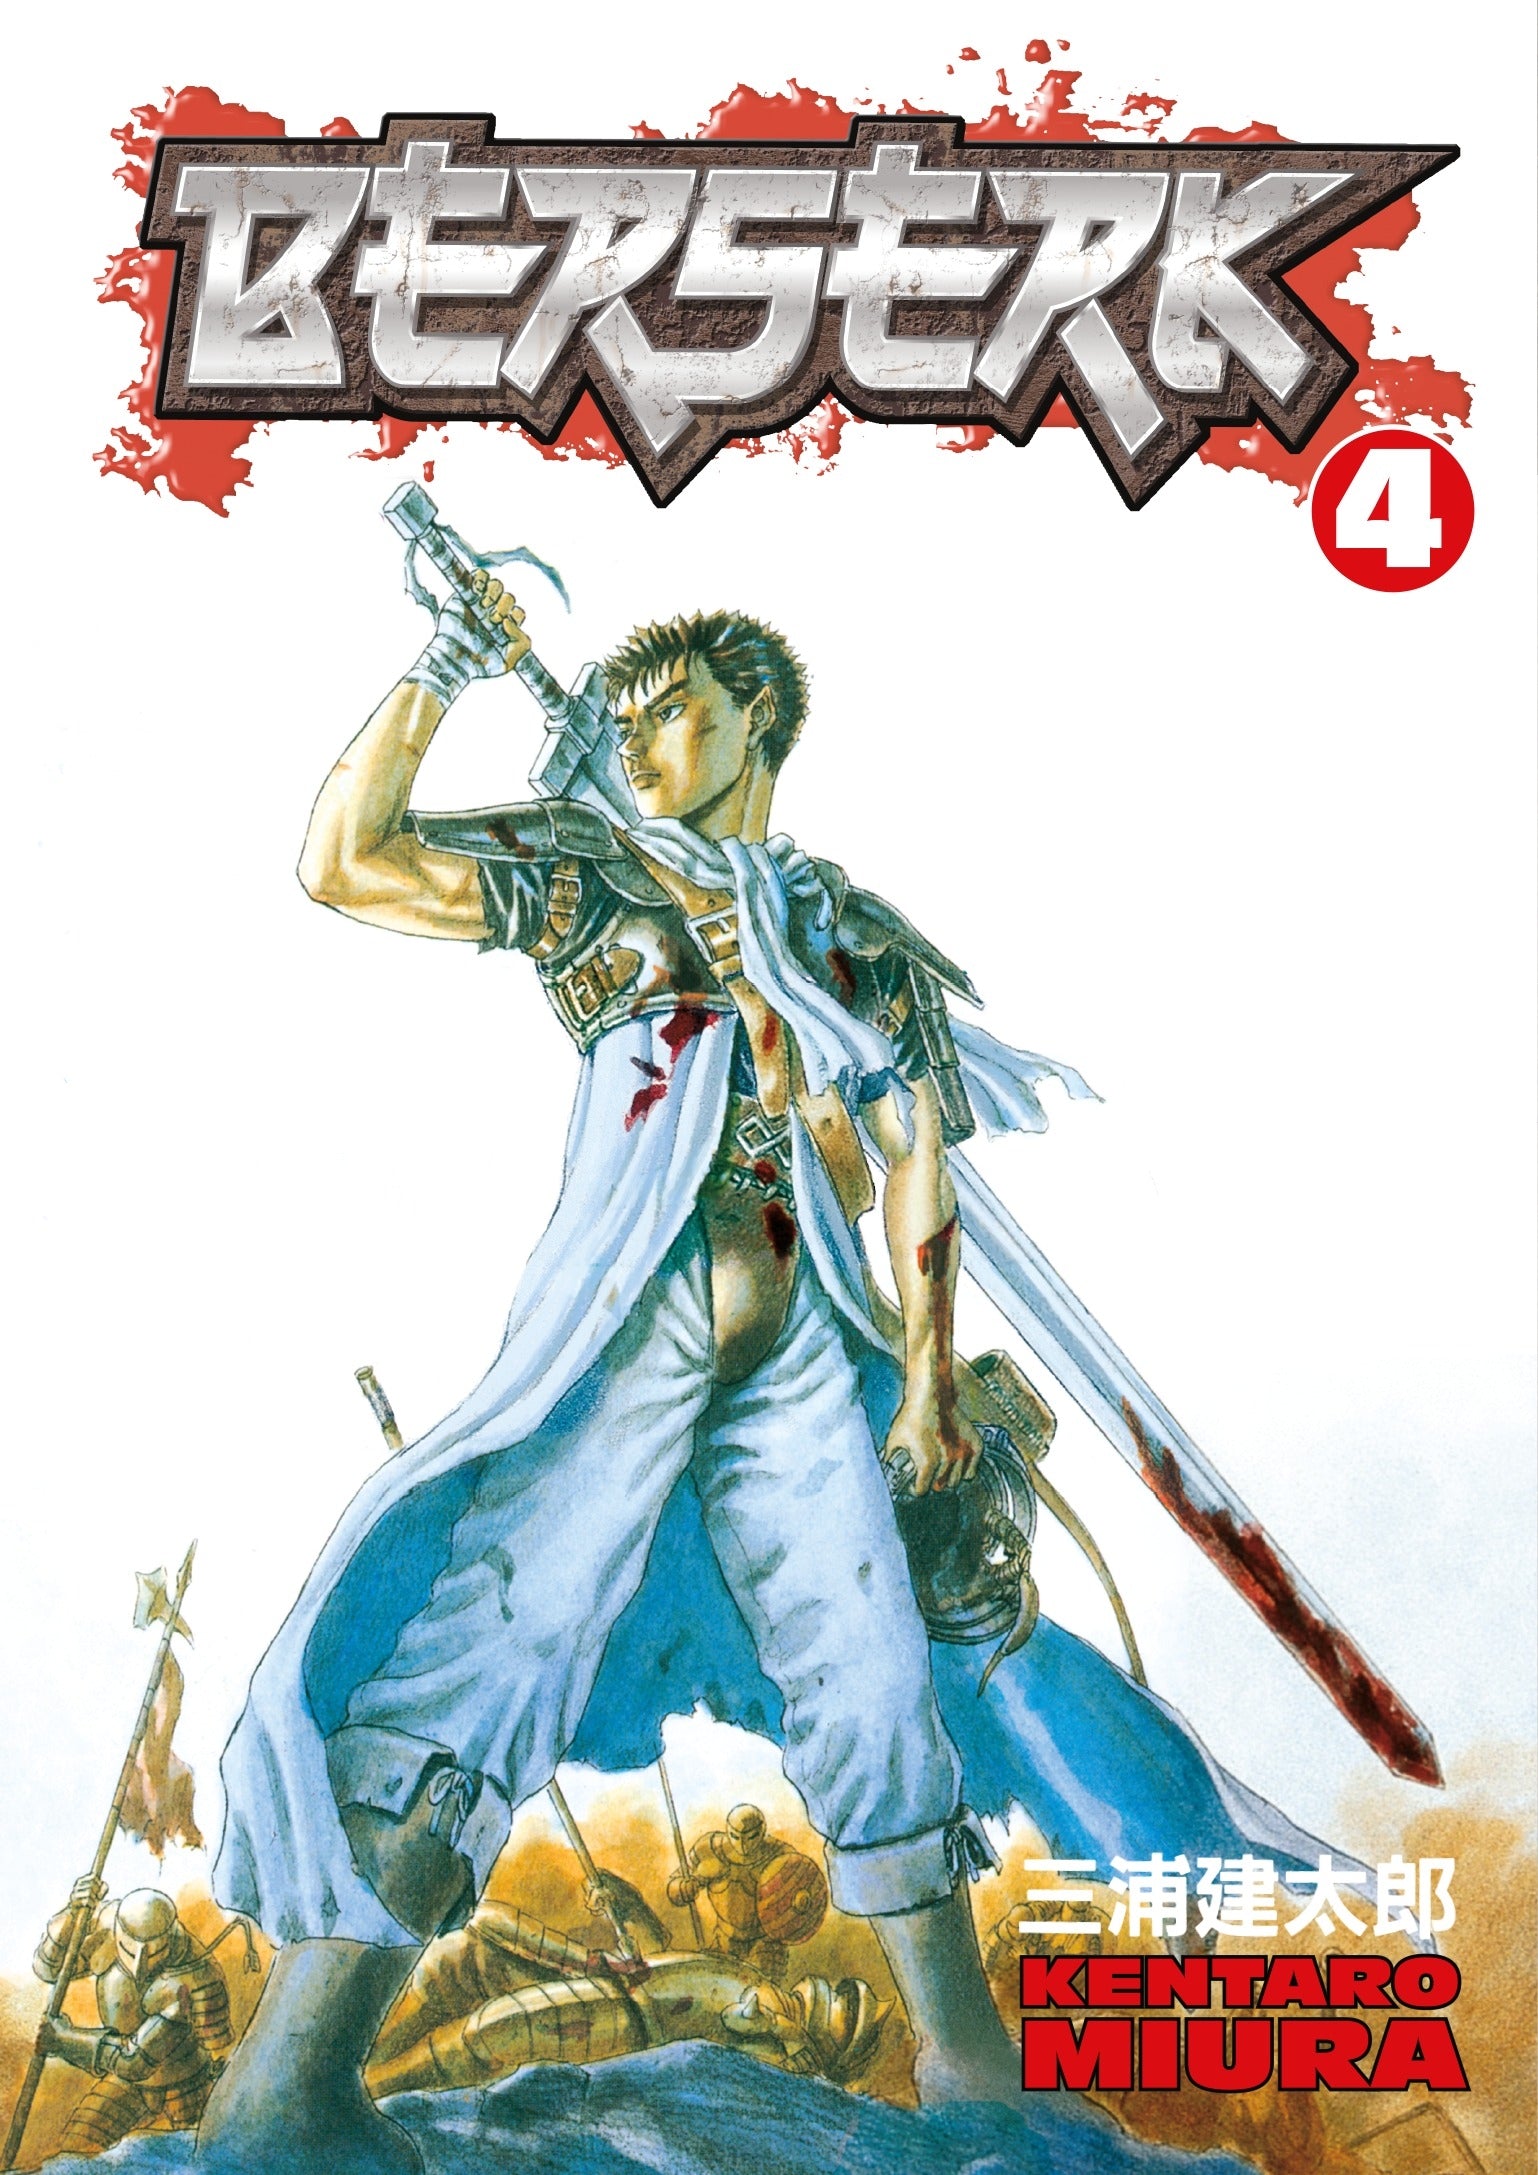 Berserk Volume 4 - Manga Warehouse